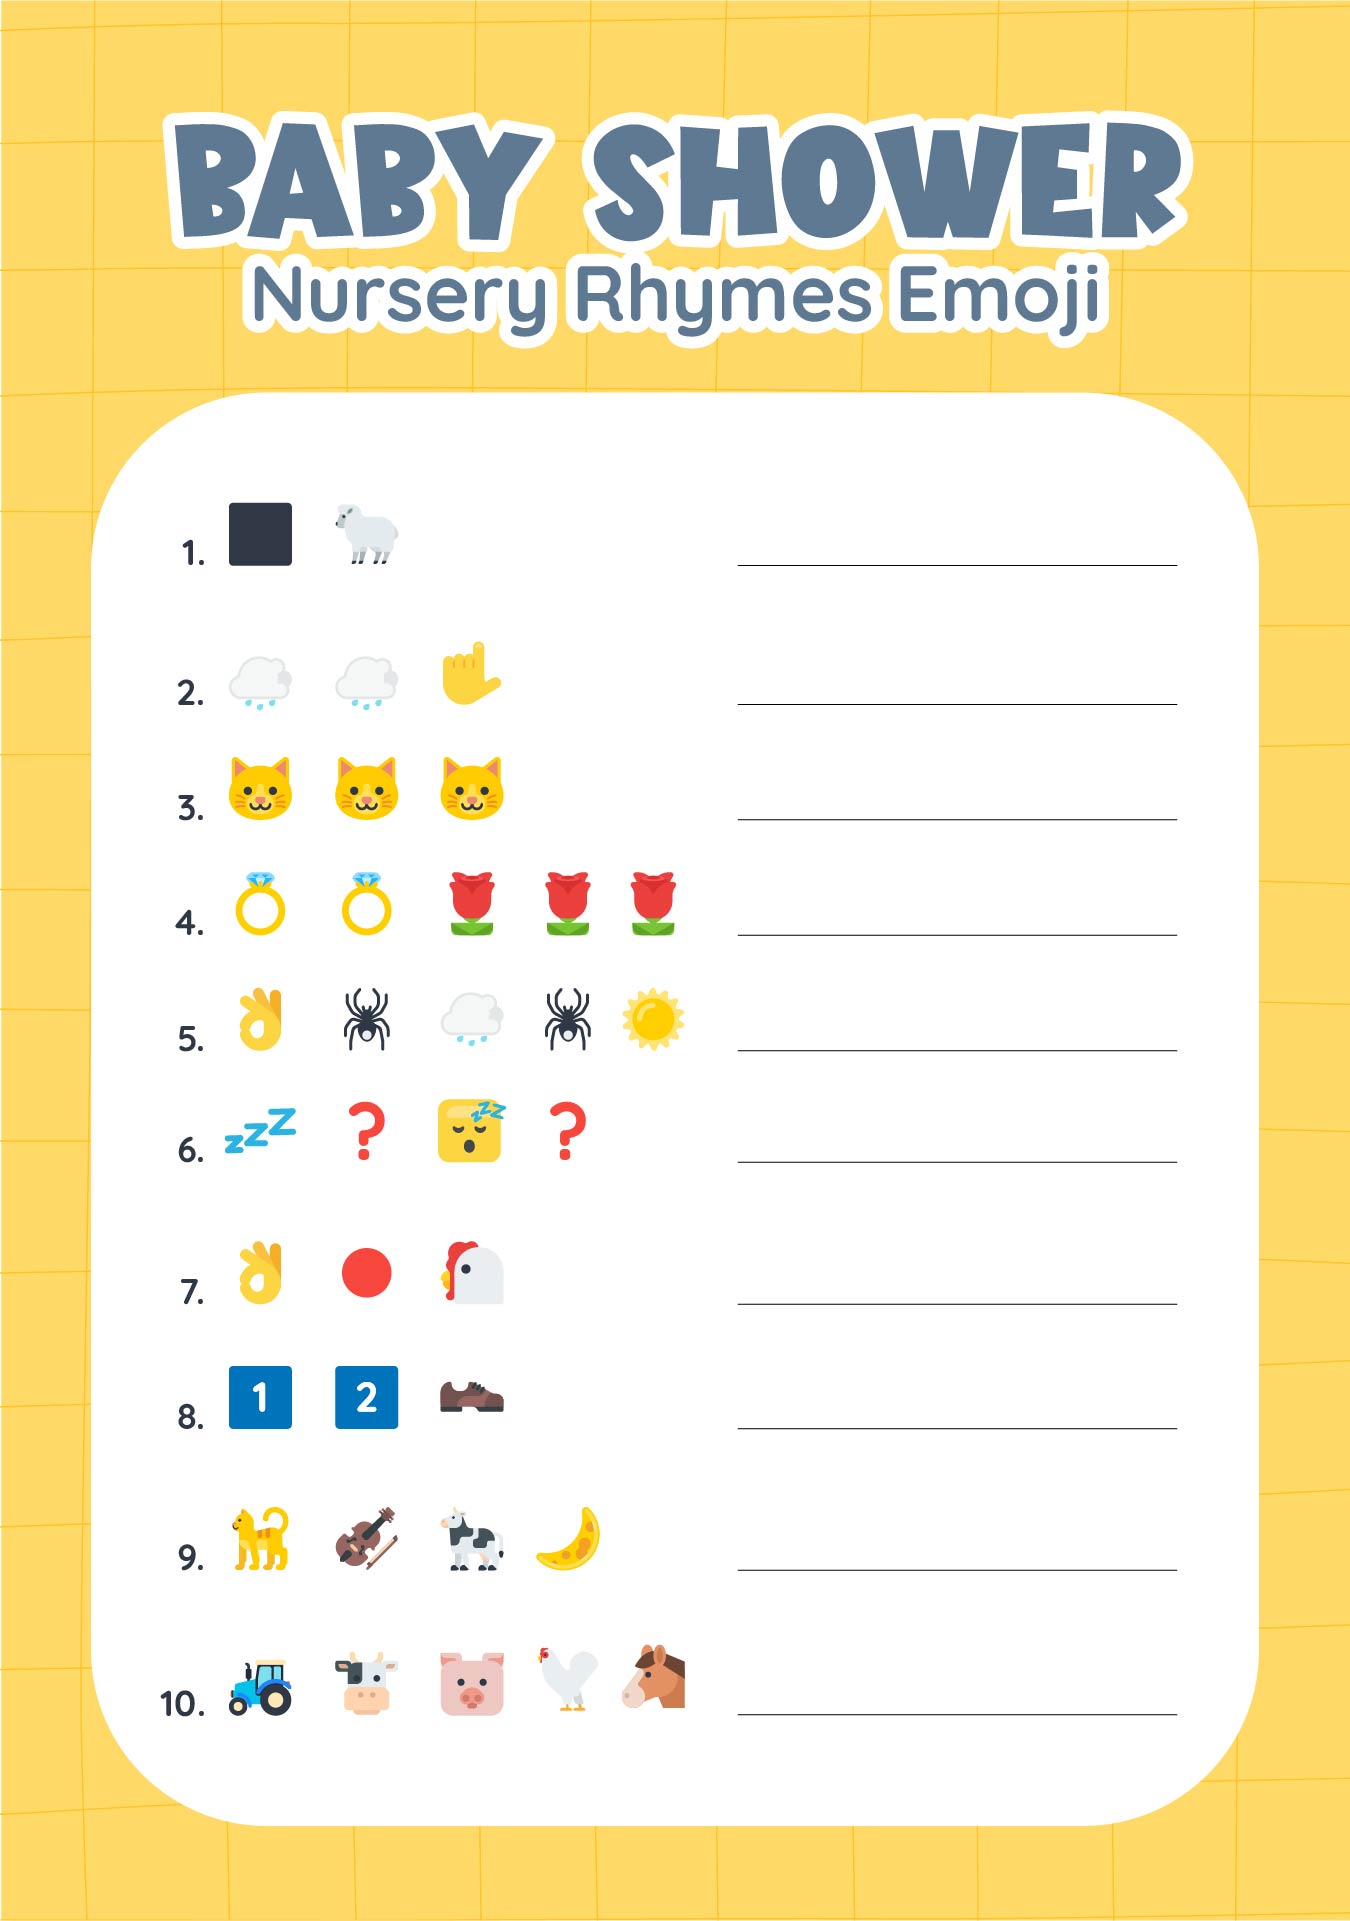 Printable Baby Shower Nursery Rhymes Emoji Quiz Answer Key